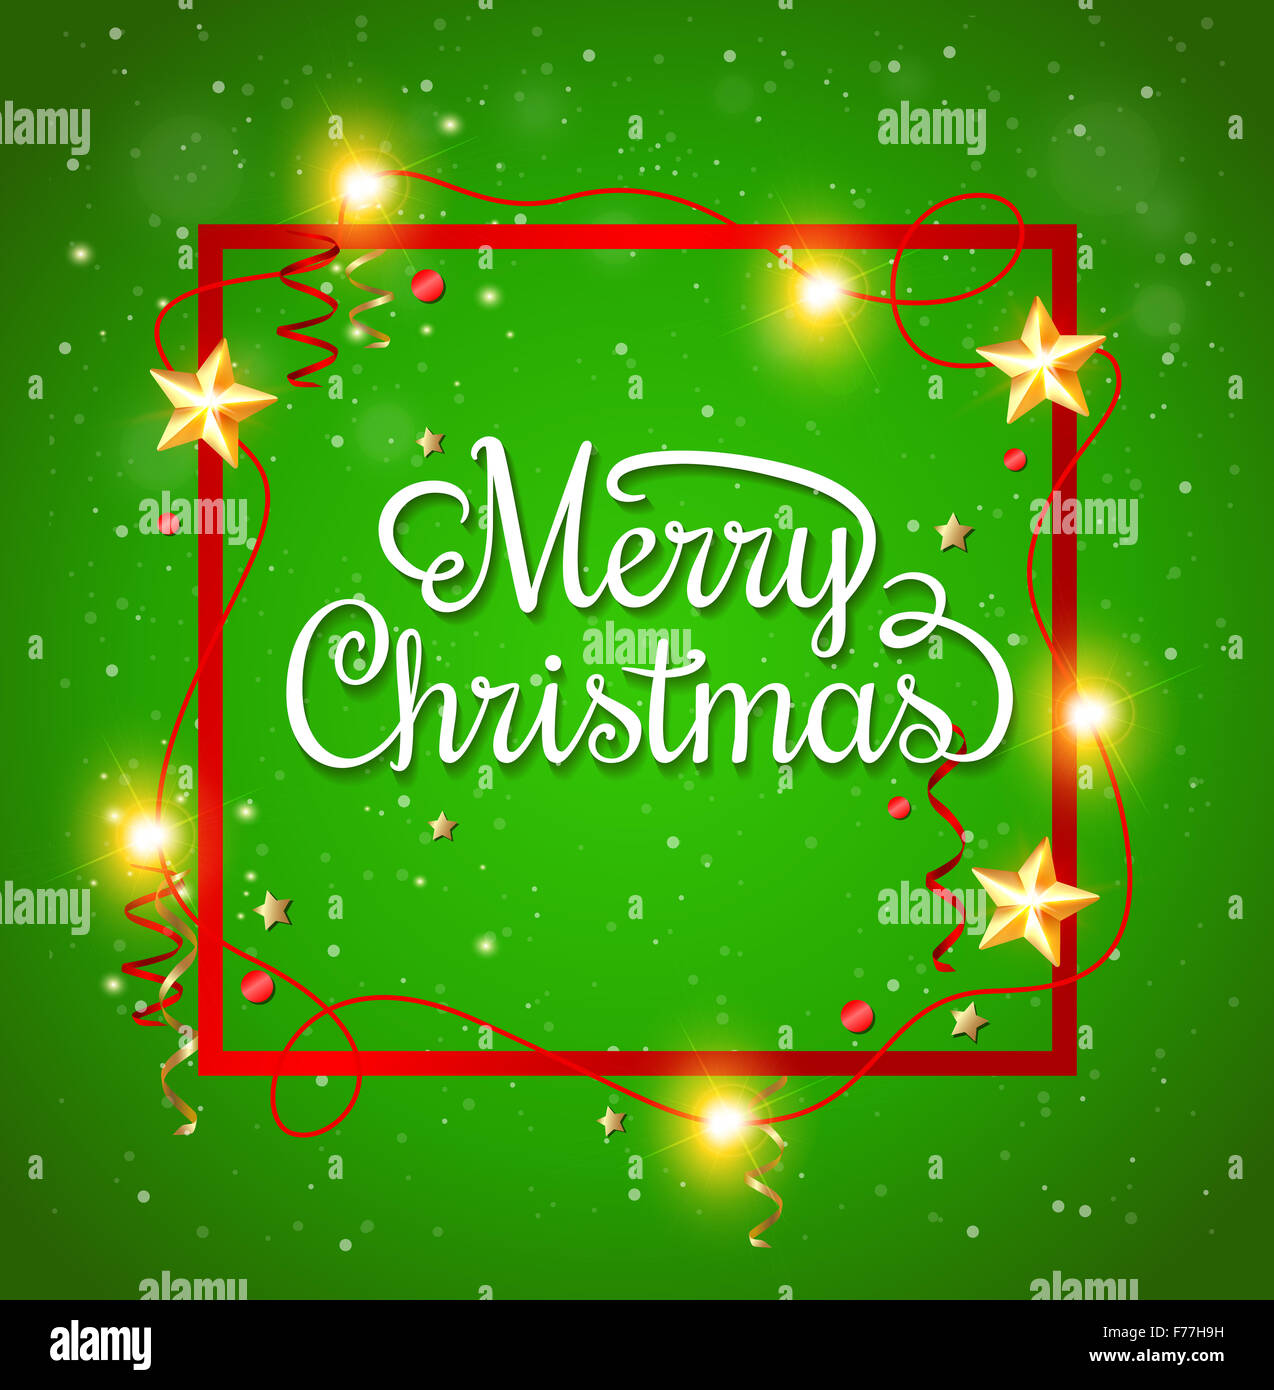 Natale decorative frame con saluto iscrizione su sfondo verde Foto Stock